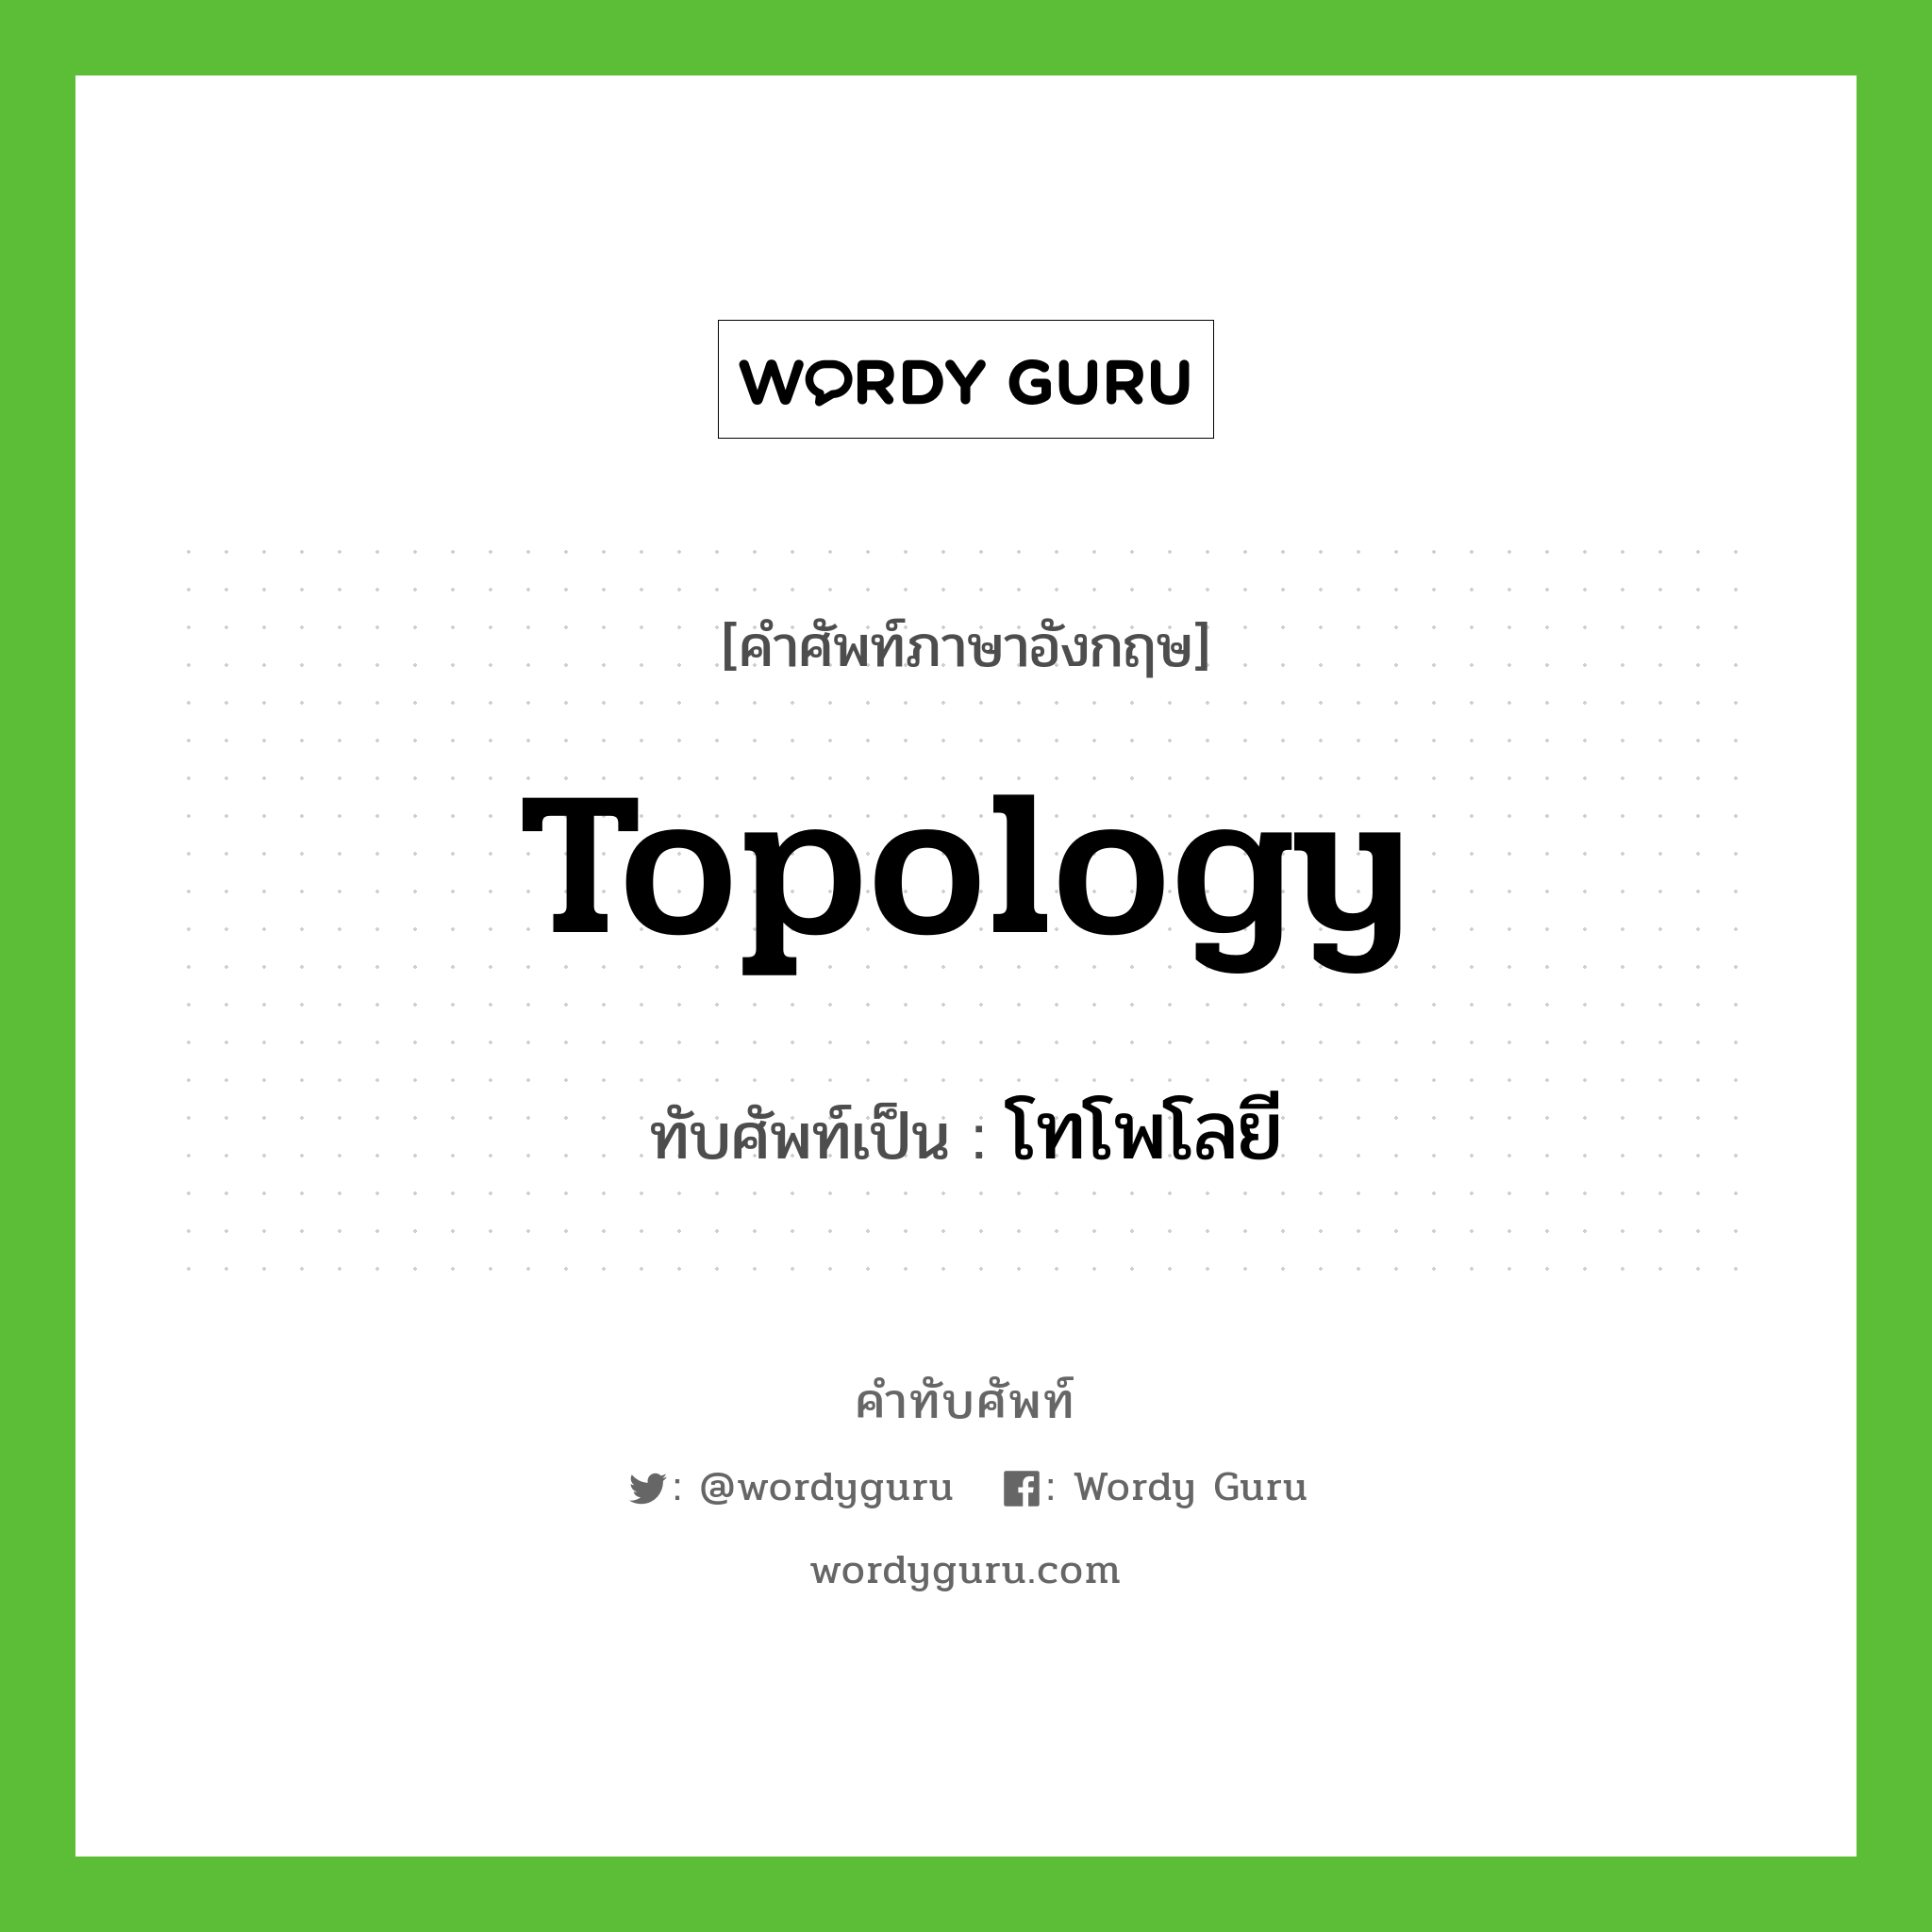 topology เขียนเป็นคำไทยว่าอะไร?, คำศัพท์ภาษาอังกฤษ topology ทับศัพท์เป็น โทโพโลยี